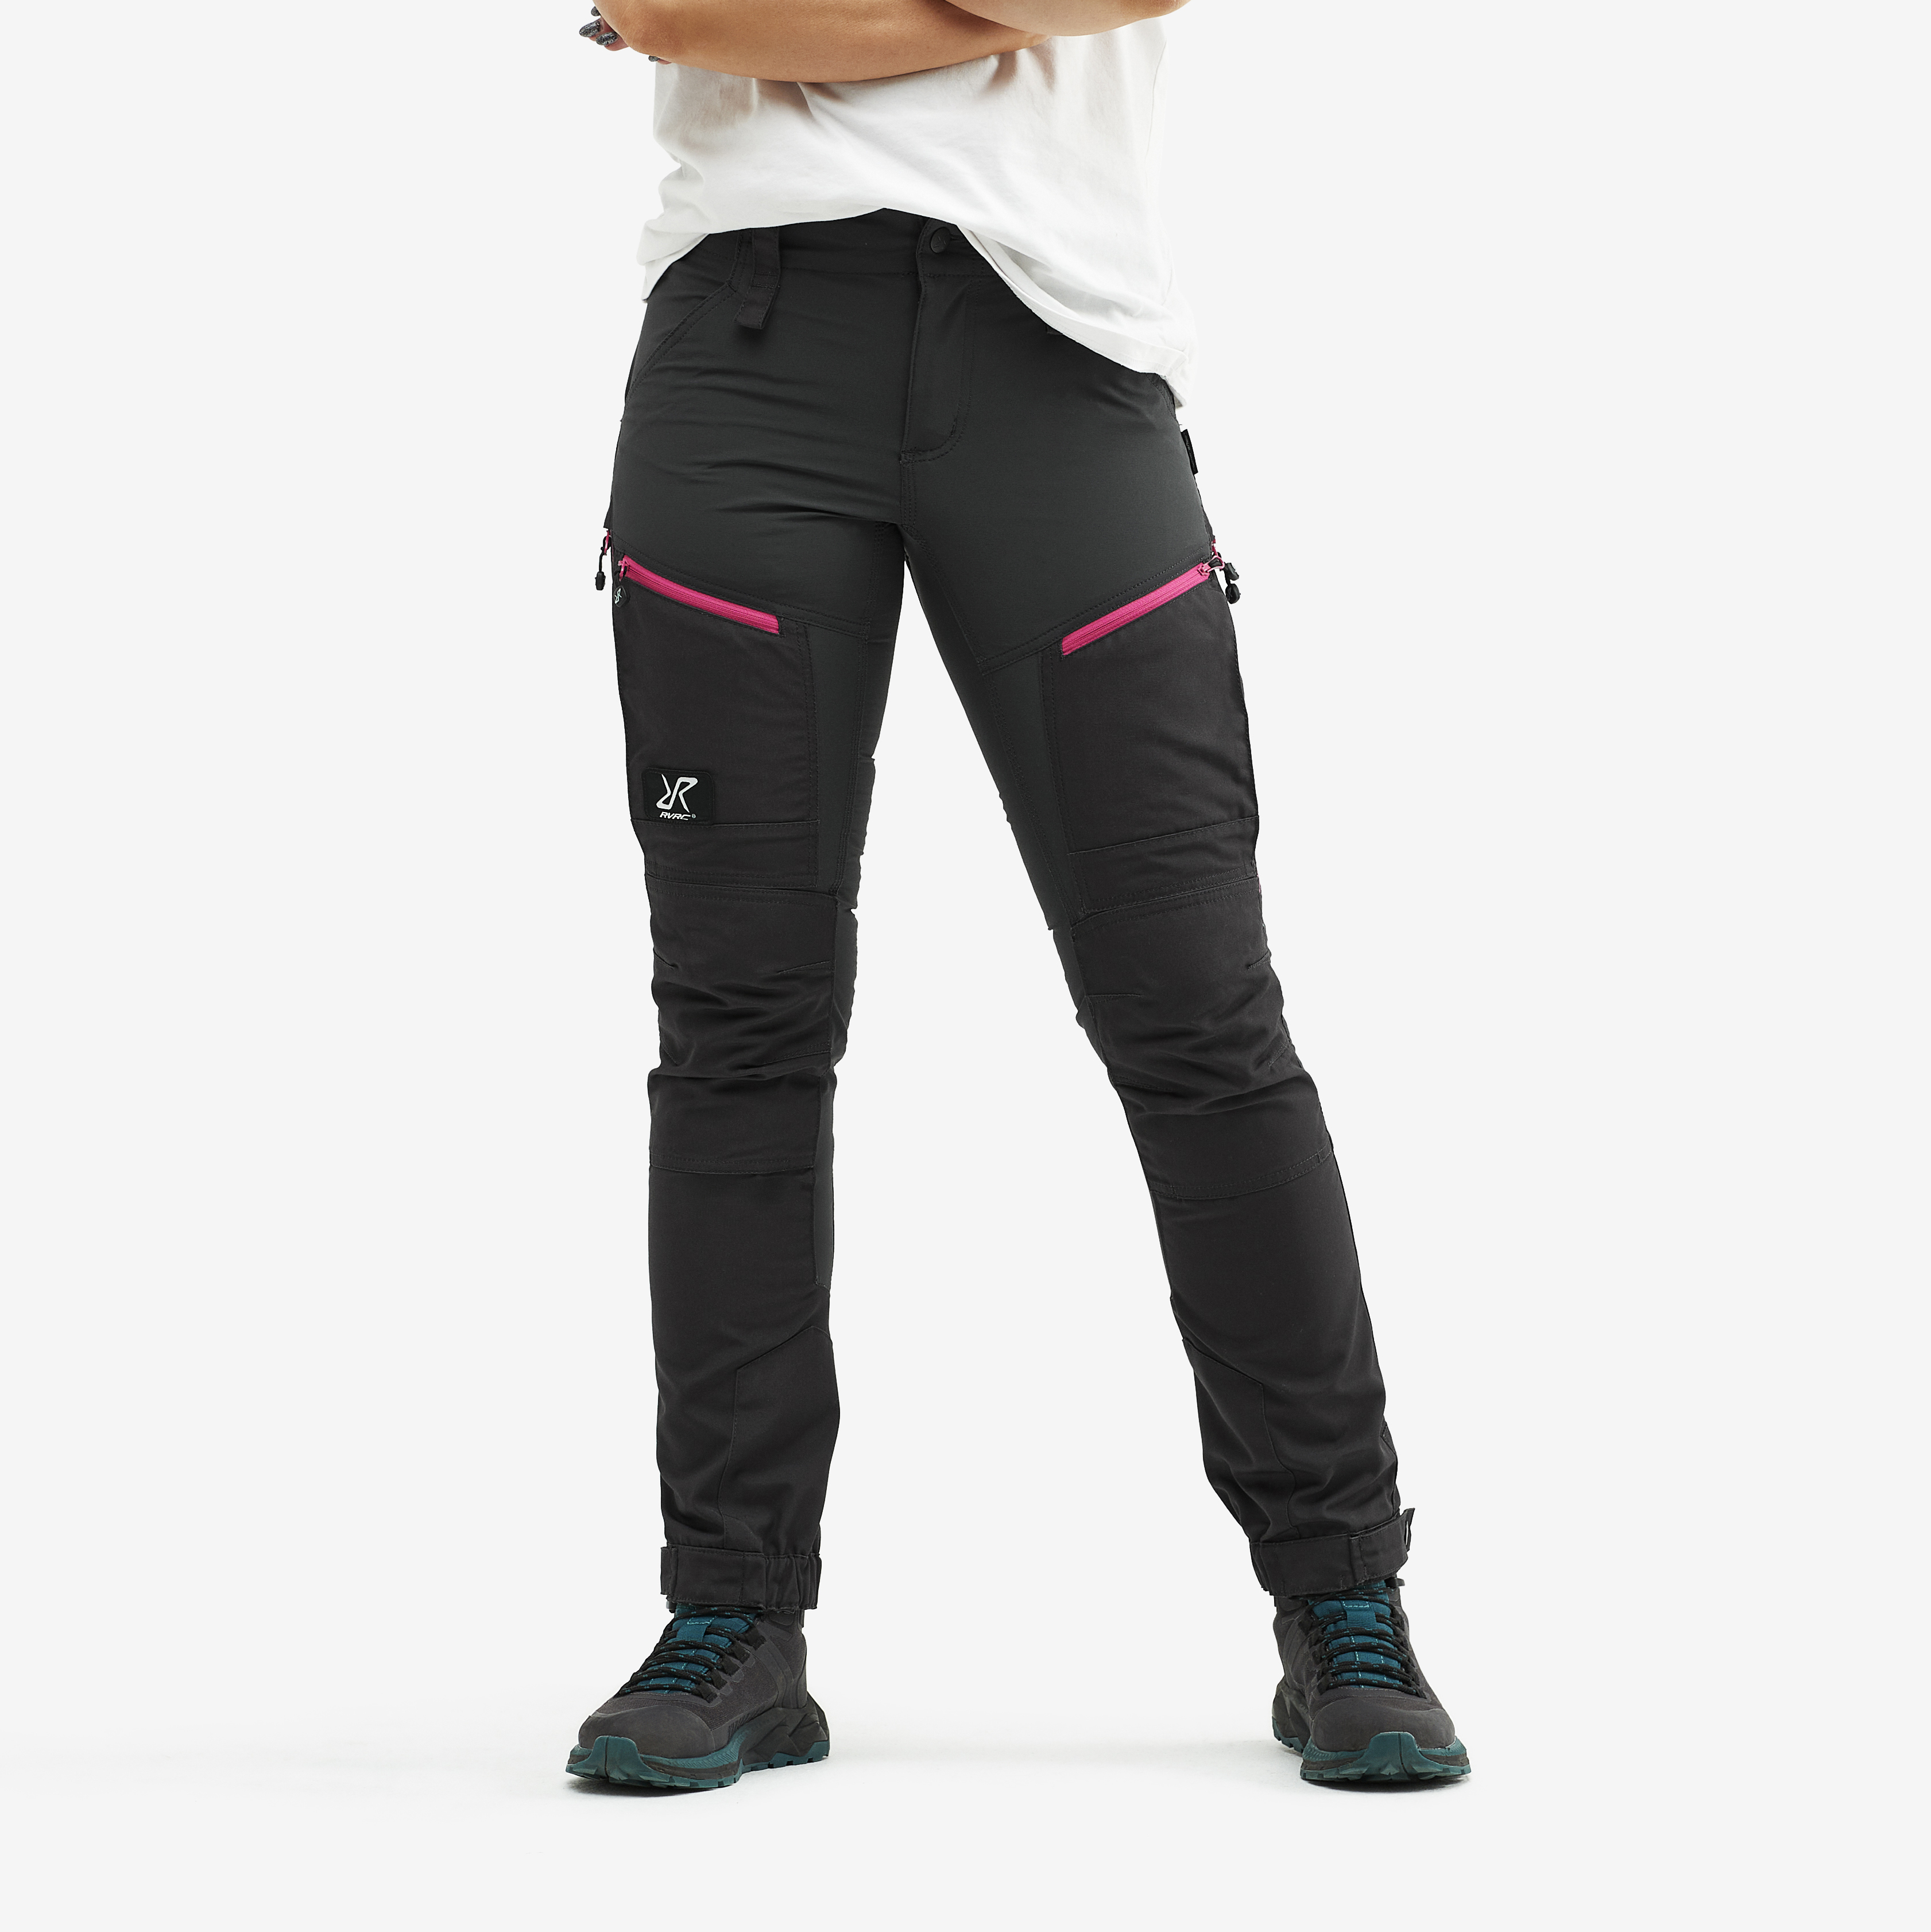 RVRC GP Pro Short turistické kalhoty pro ženy v tmavě šedé barvě